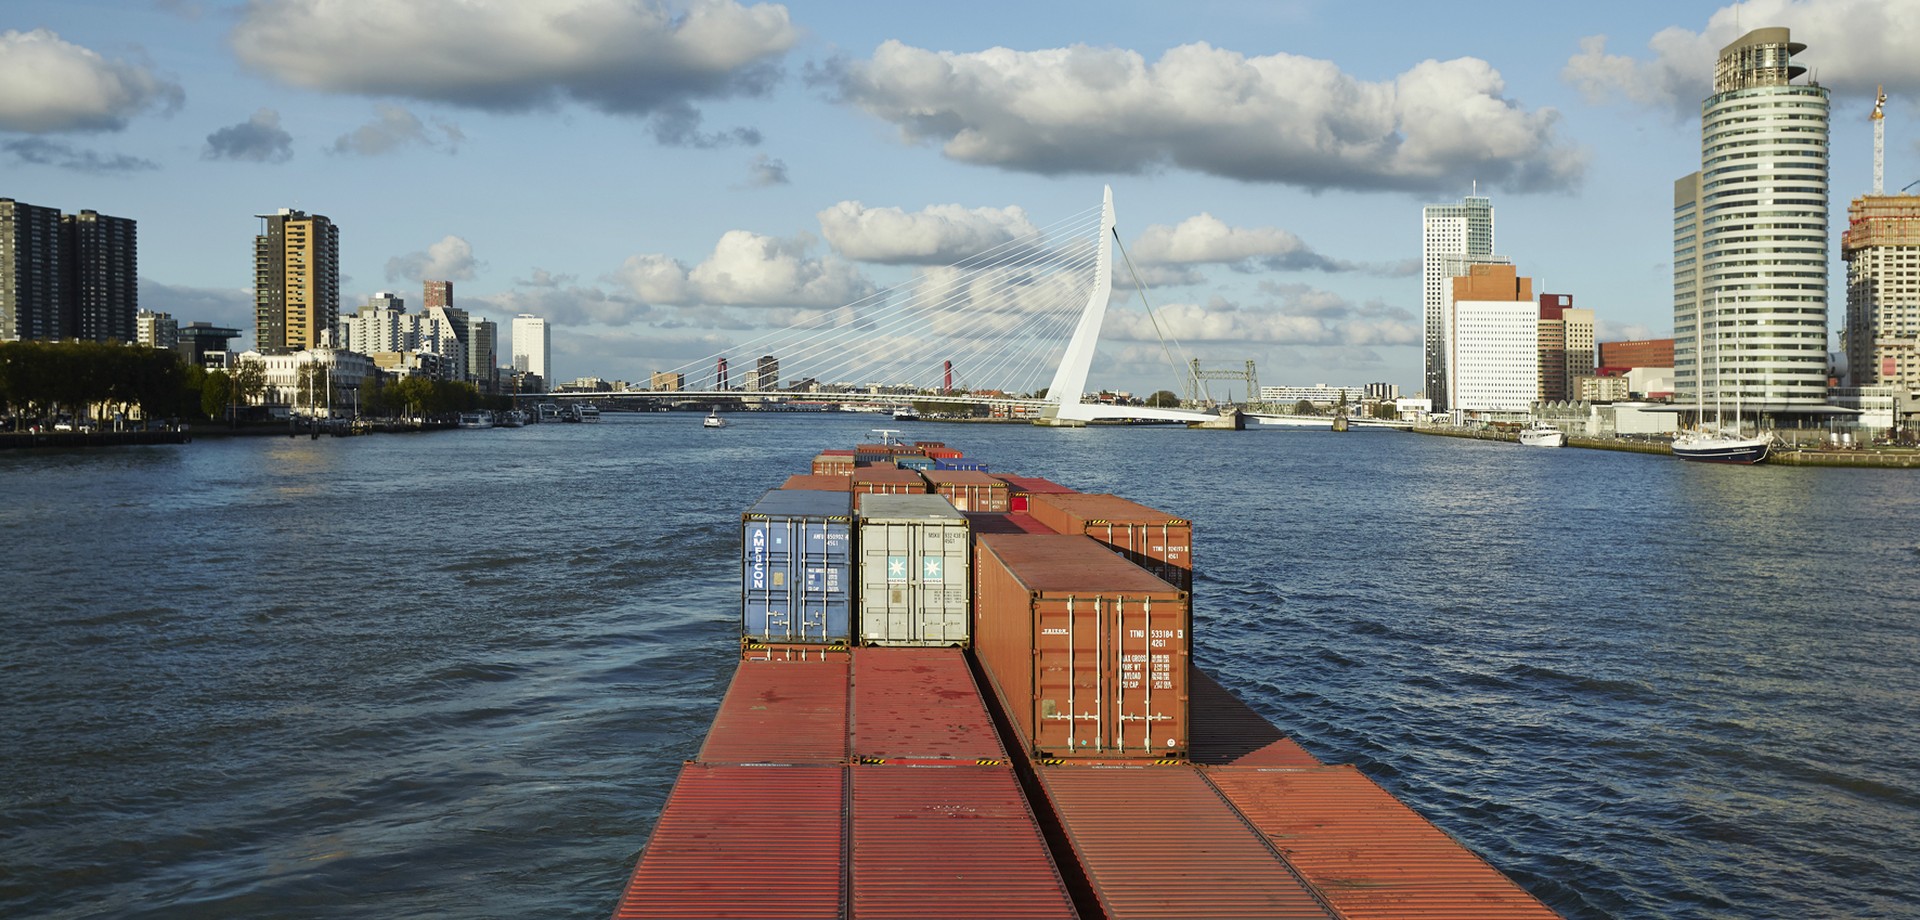 Farbaufnahme aufgenommen von einem fahrenden Containerschiff im Fluss mit Blick auf eine Skyline.